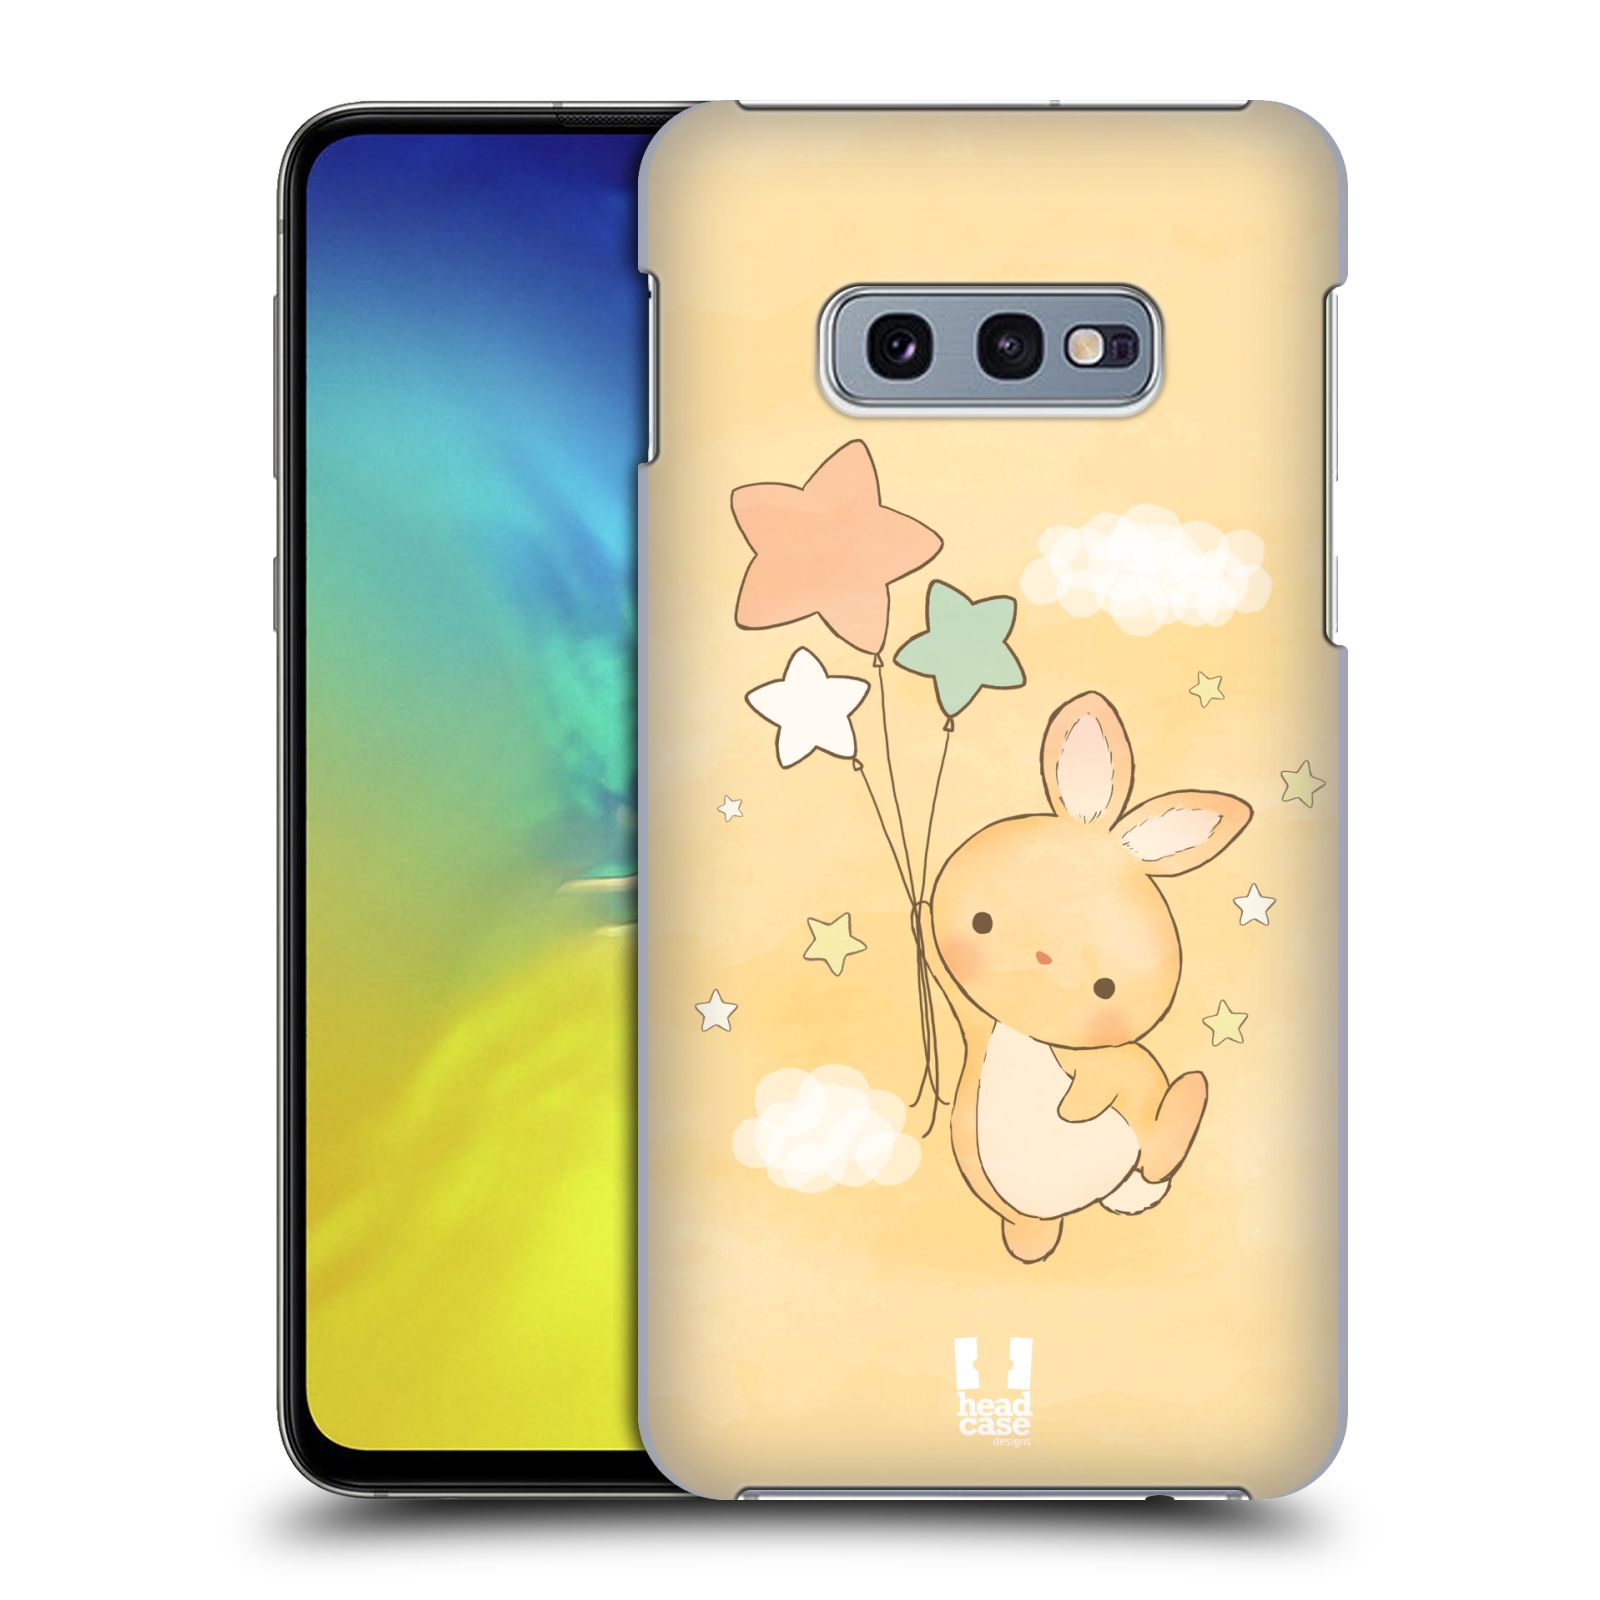 Pouzdro na mobil Samsung Galaxy S10e - HEAD CASE - vzor králíček a hvězdy žlutá